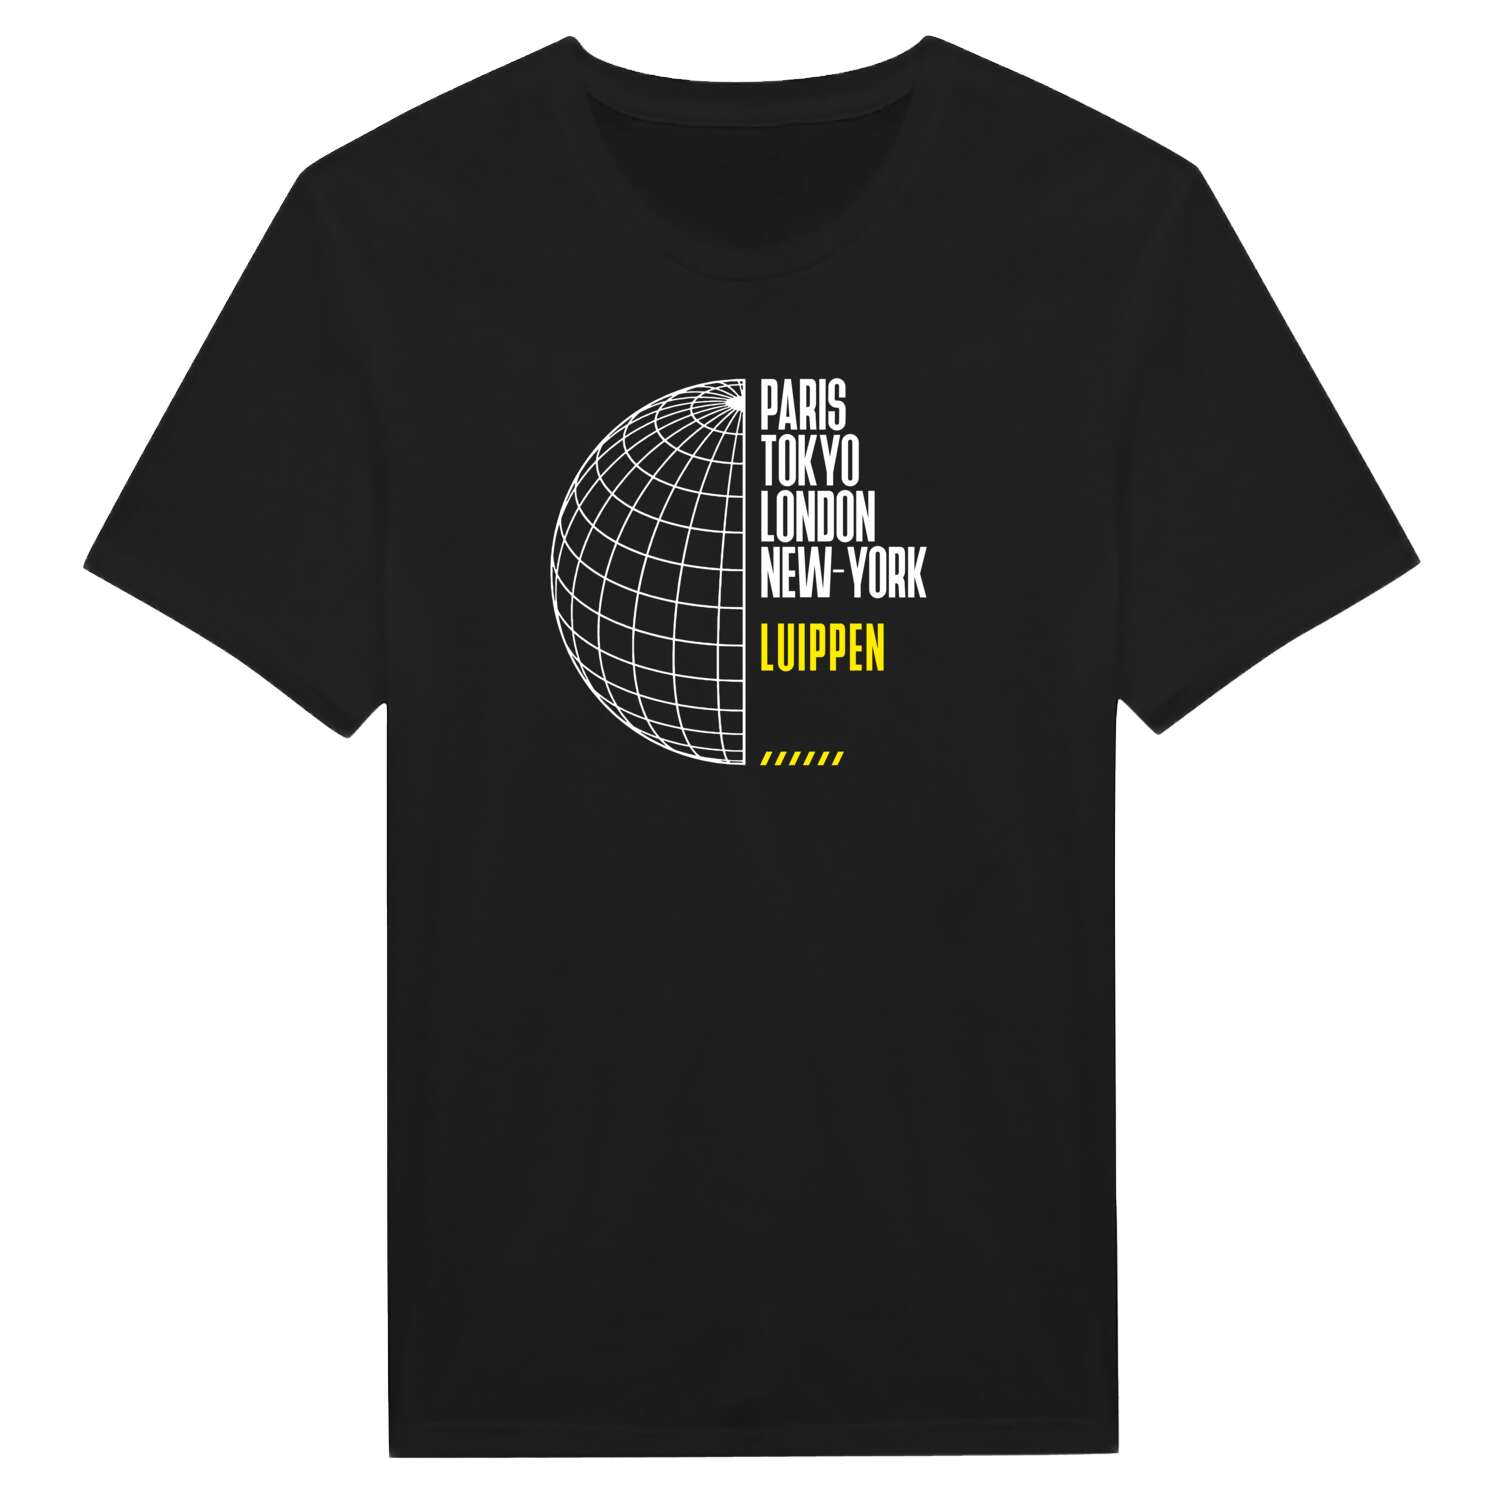 Luippen T-Shirt »Paris Tokyo London«